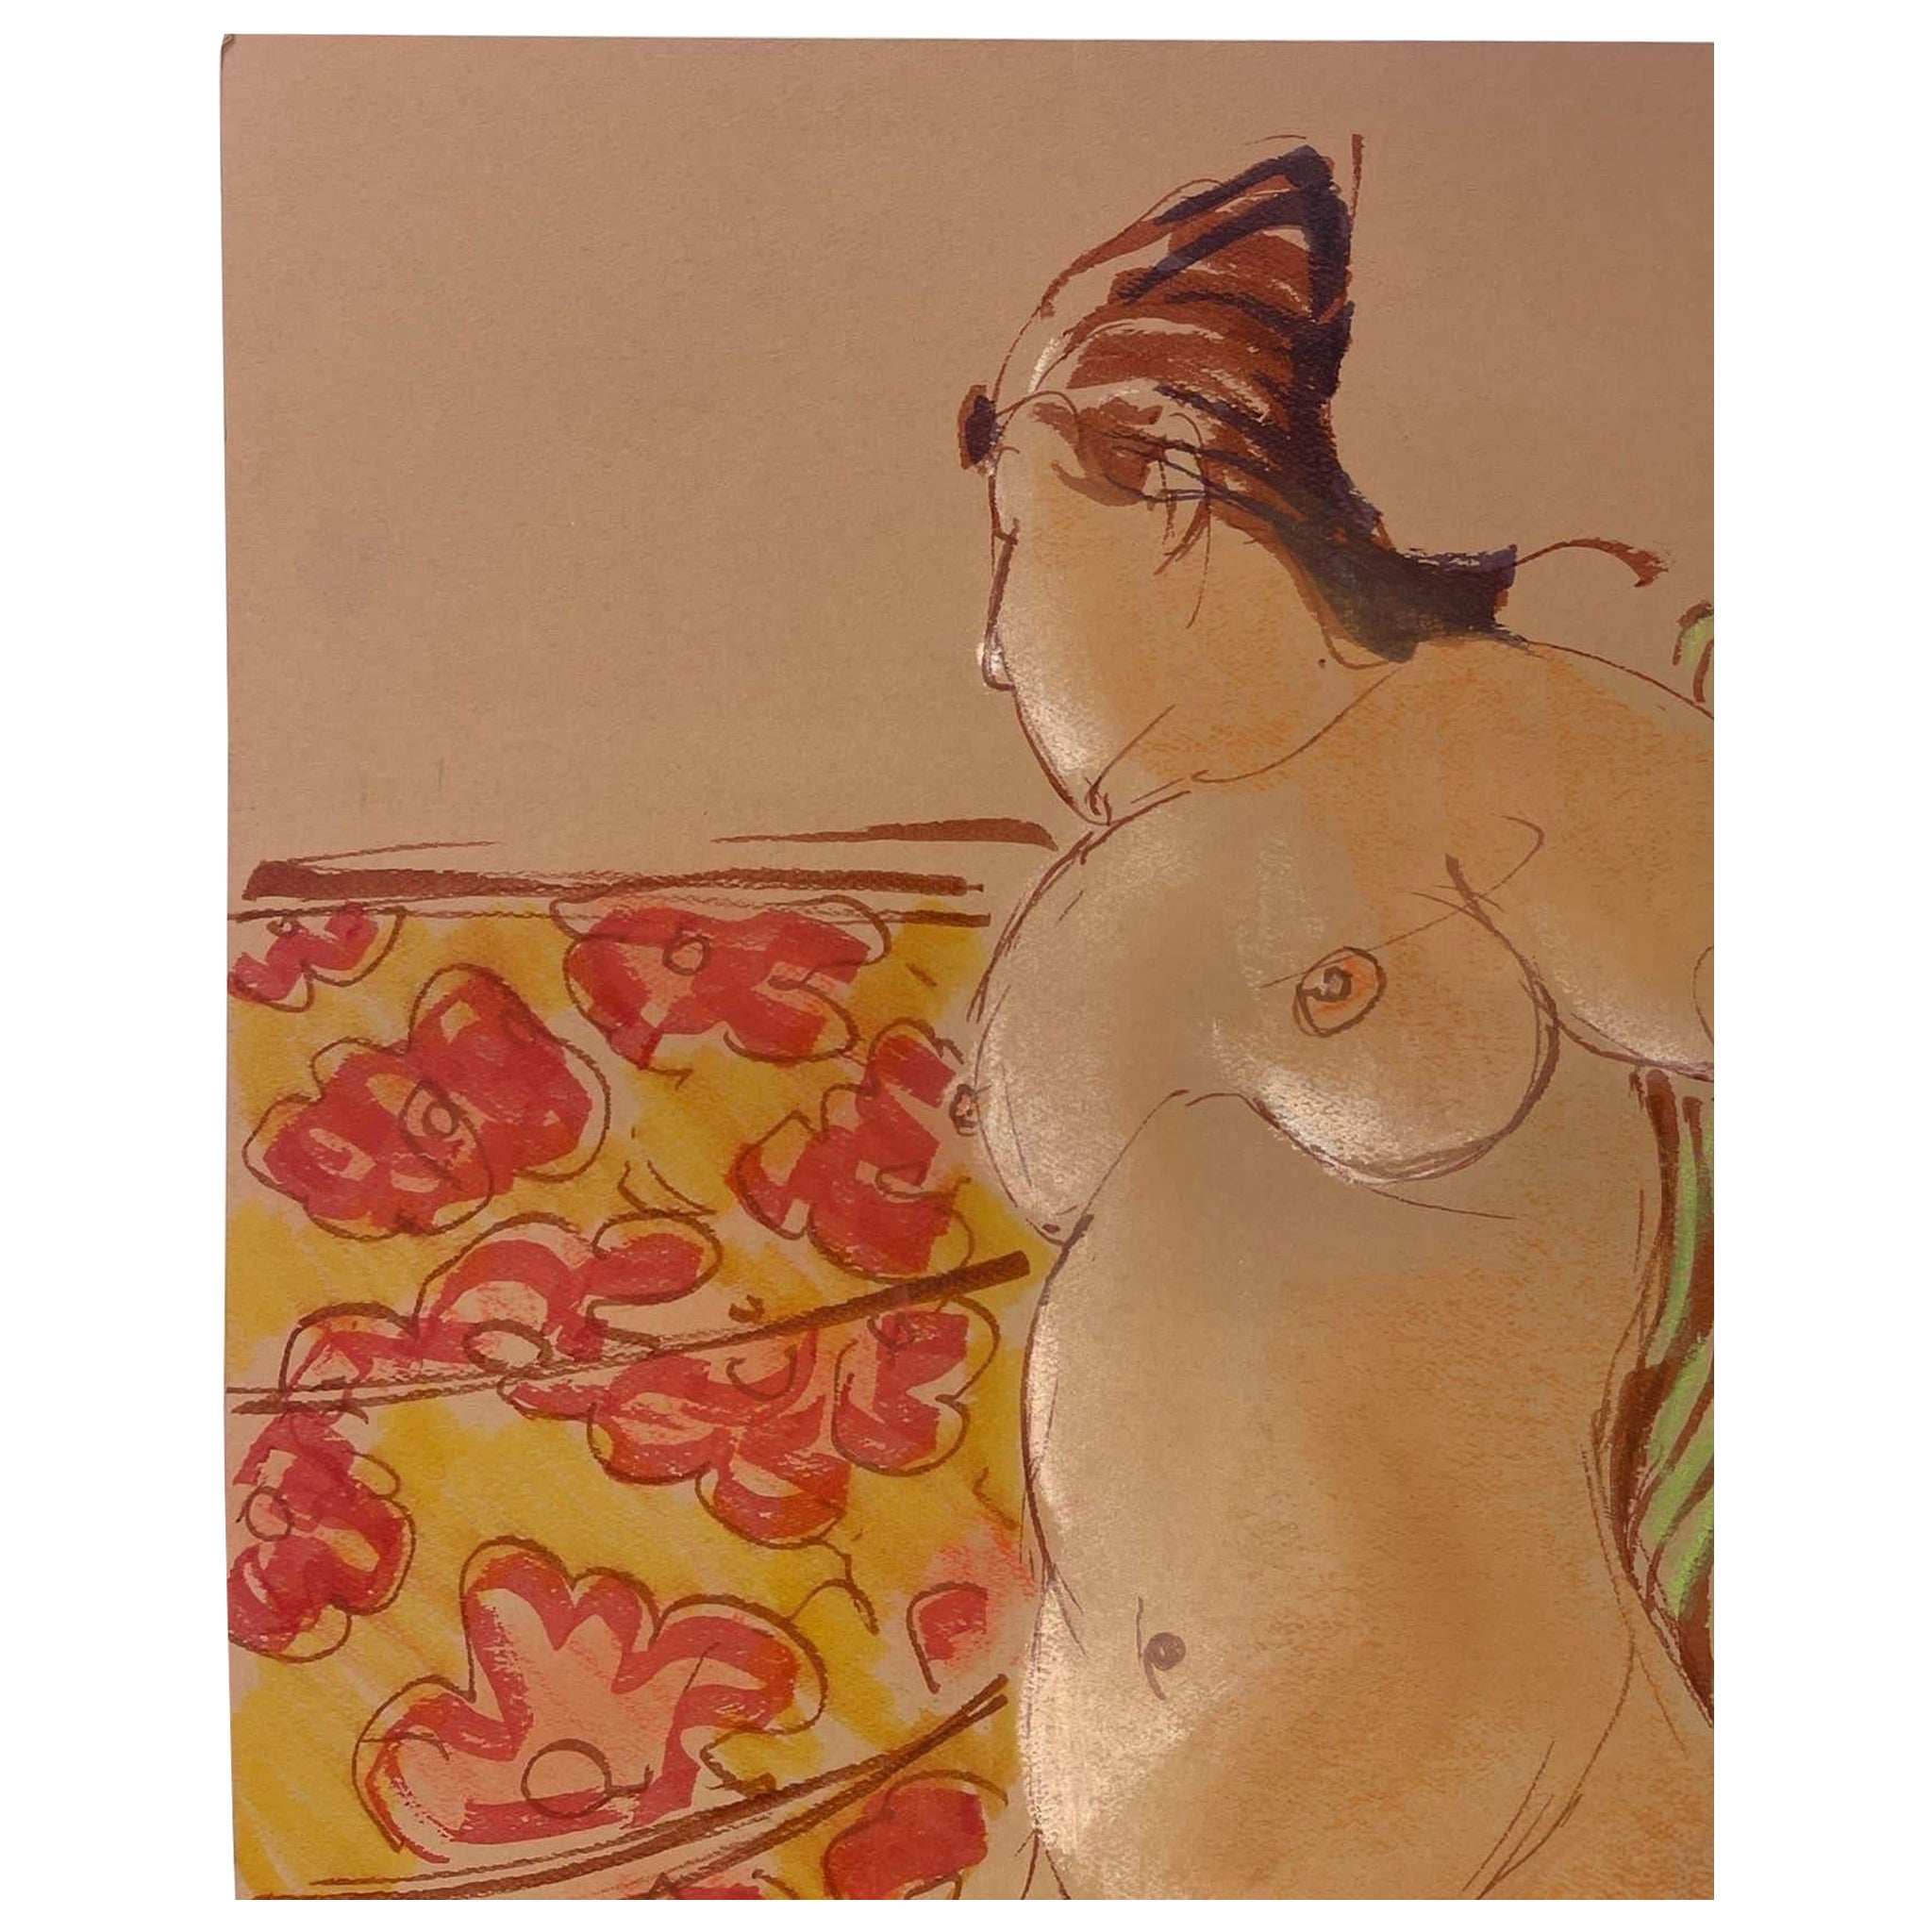 Portrait de femme nue abstraite vintage, peut-être au pastel sur papier.